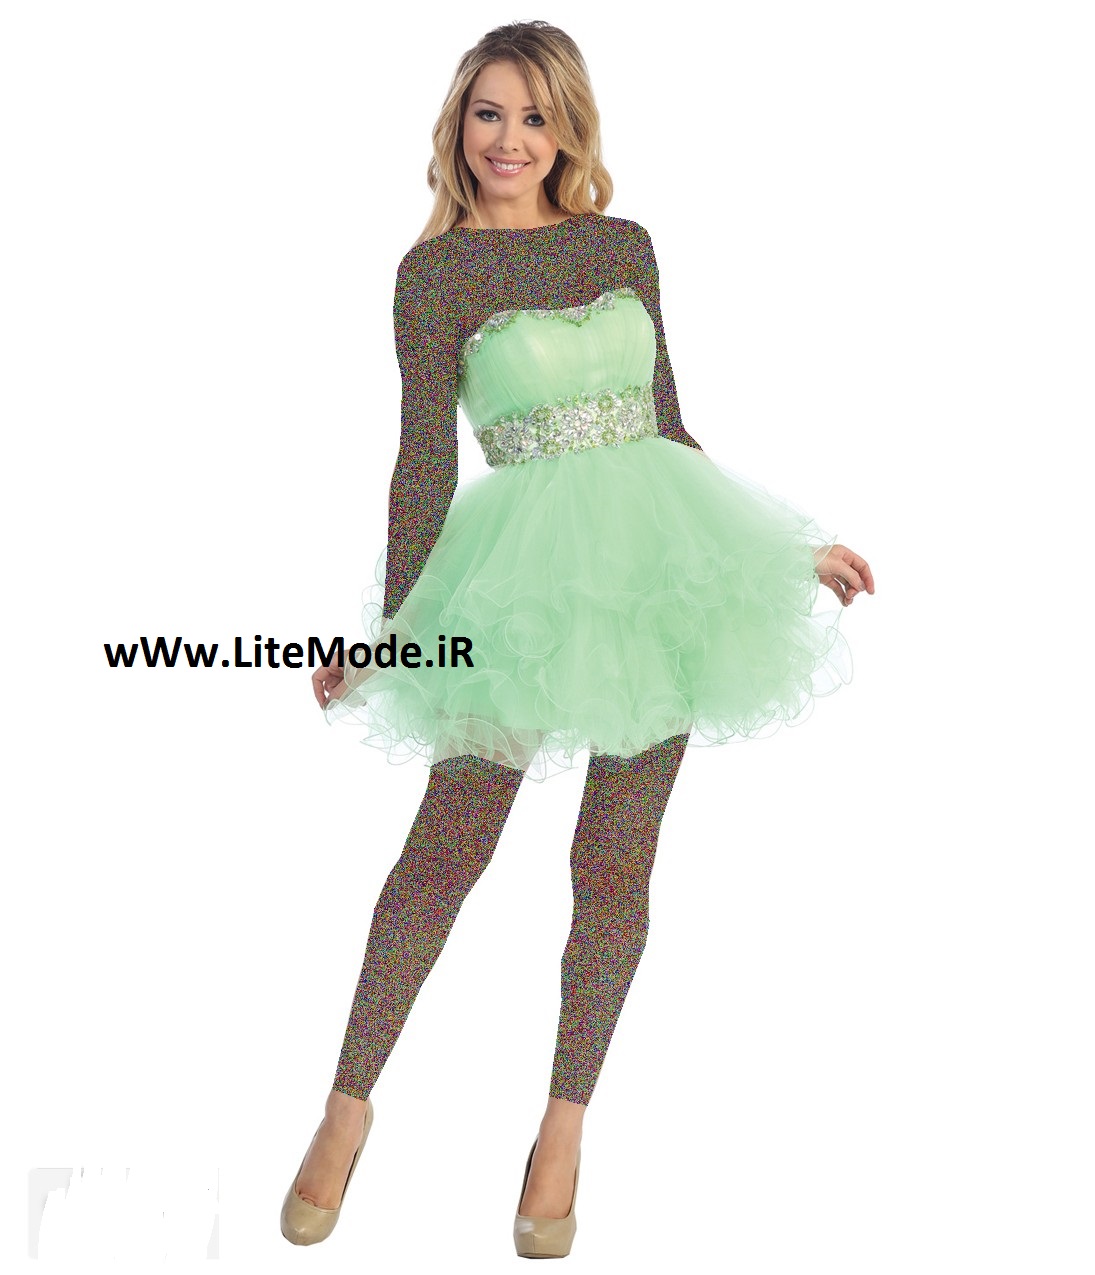 مدل لباس مجلسی,مدل لباس مجلسی سبز رنگ